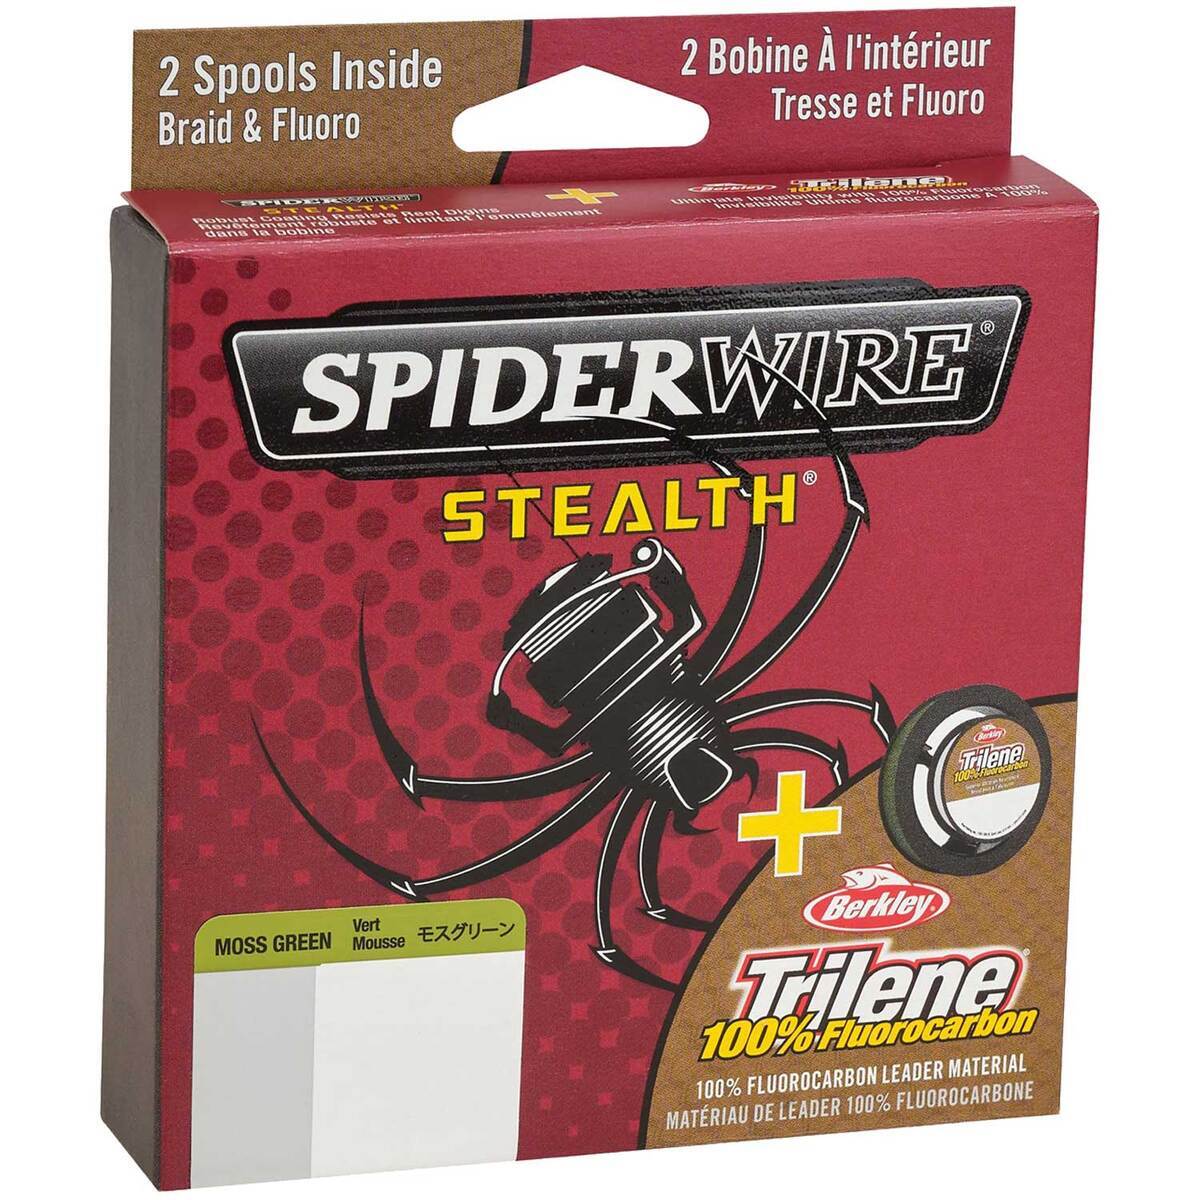 https://www.sportsmans.com/medias/spiderwire-stealth-tirlene-fluorocarbon-dual-braided-line-8lb-moss-greenclear-125yd-1714772-1.jpg?context=bWFzdGVyfGltYWdlc3wxOTg0MTN8aW1hZ2UvanBlZ3xhREExTDJoa01pOHhNREV3TWpNME56TXpNelkyTWk4eE56RTBOemN5TFRGZlltRnpaUzFqYjI1MlpYSnphVzl1Um05eWJXRjBYekV5TURBdFkyOXVkbVZ5YzJsdmJrWnZjbTFoZEF8YWJmMGI0NWQ4ODM0YTIwNDc0ZGQxNmVlOTdmODk5NzcwOTg2NWExNjhkZTY5Y2FkOGY5MjY5MzRjNDNlODc4MA